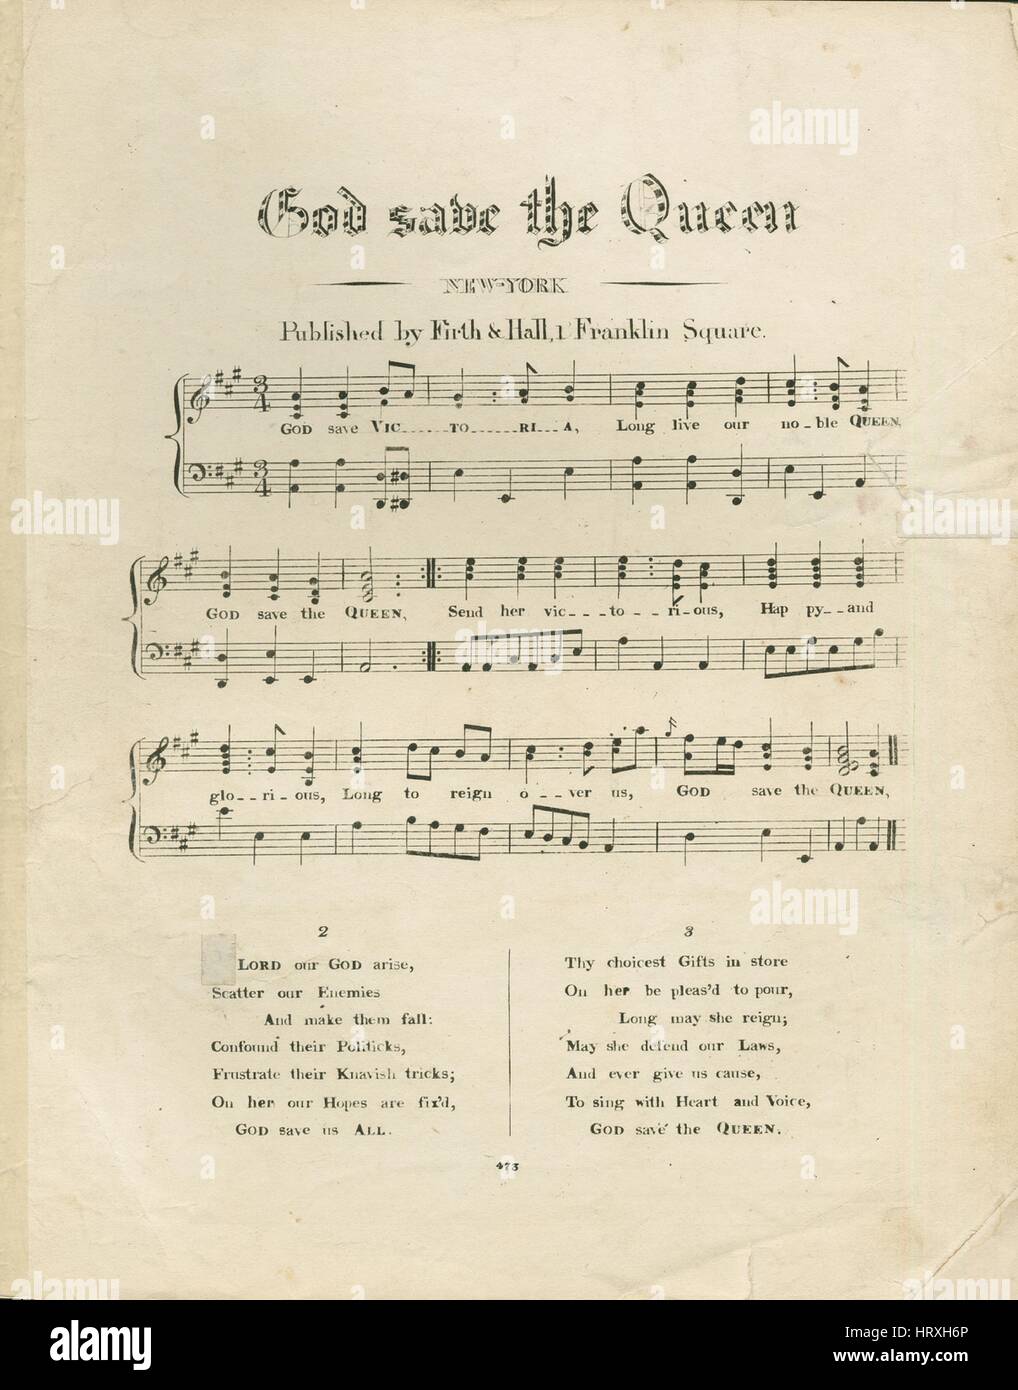 Sheet Music image de couverture de la chanson 'God Save the Queen', avec  une œuvre originale lecture notes 'na', United States, 1900. L'éditeur est  répertorié comme 'Firth et Hall, 1 Franklin Square',